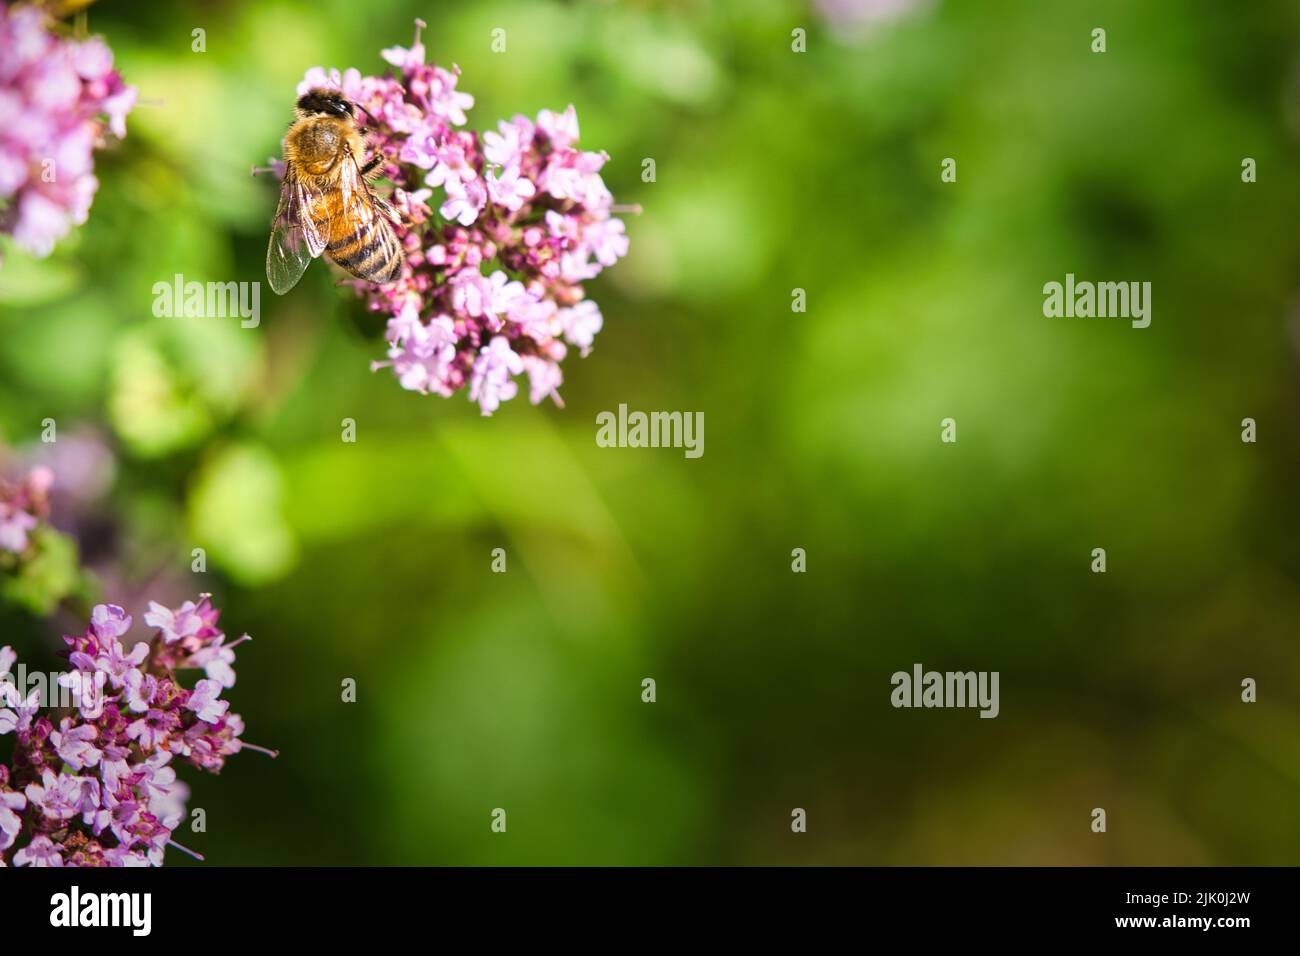 Honigbiene sammelt Nektar auf einer Blume des Blütenschmetterlingsbusches. Fleißige Insekten aus der Natur. Von Bienen ernten wir den Honig. Tierfoto aus dem Natu Stockfoto